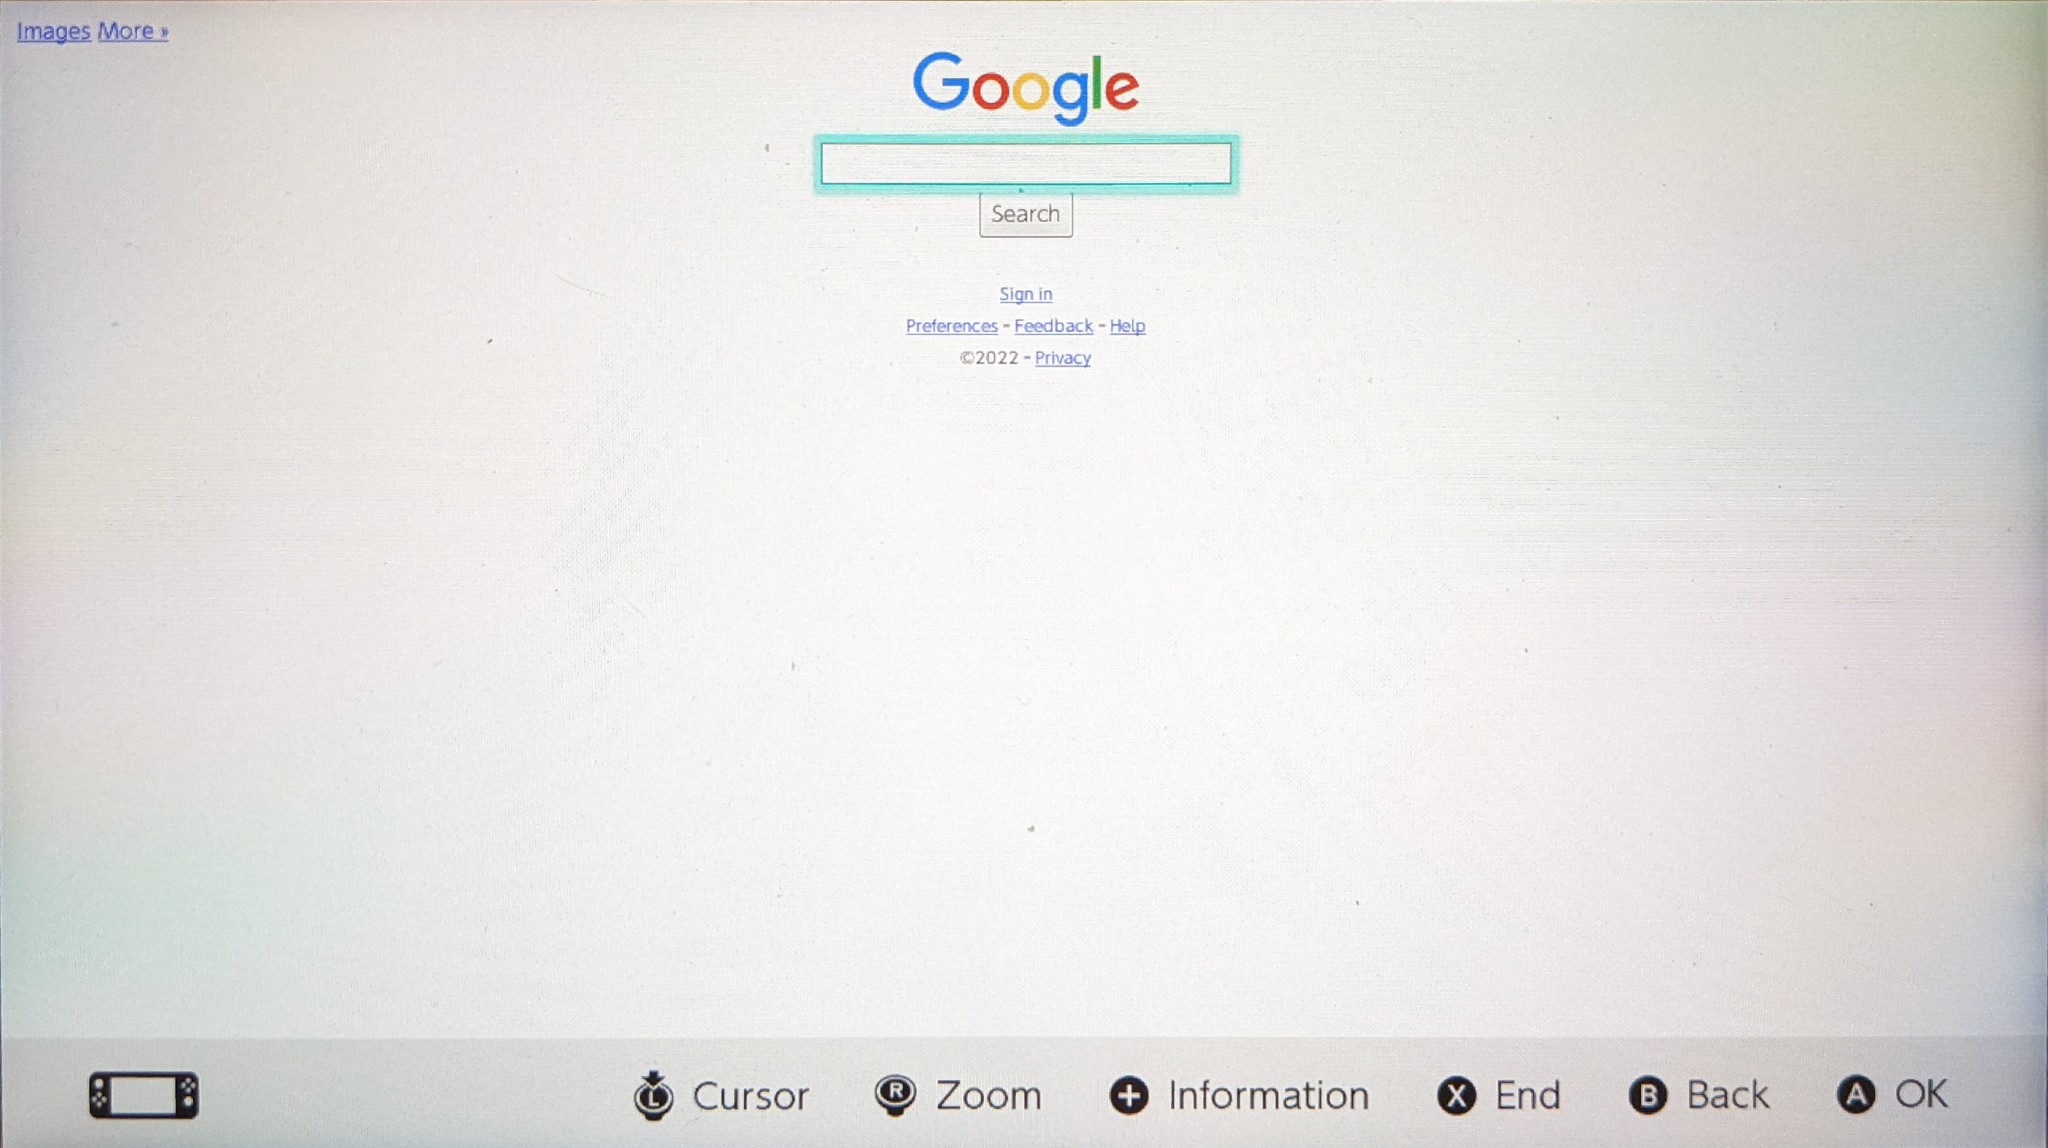 Comment utiliser le navigateur caché sur switch ad switch lite : Google navigue sur internet